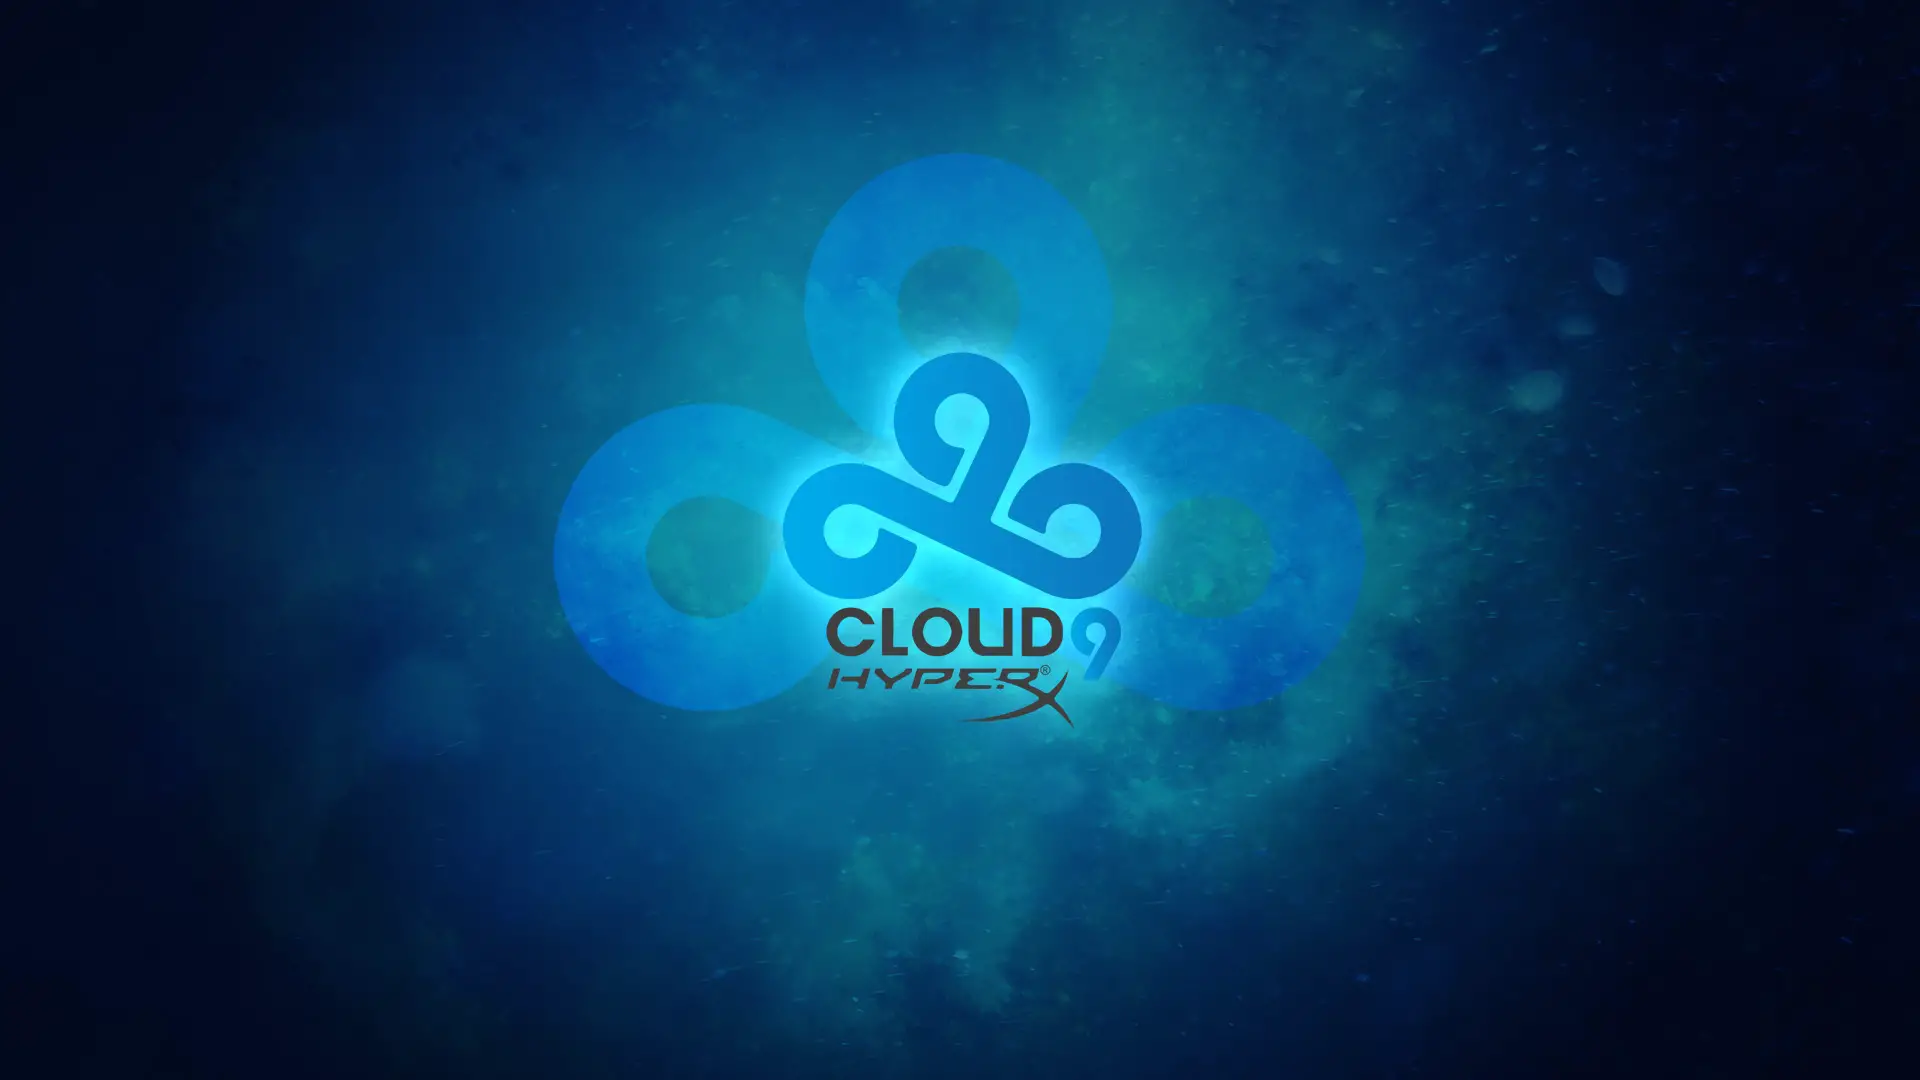 25 Cloud9 Wallpapers - BC-GB - Gaming & Esports News & Blog
